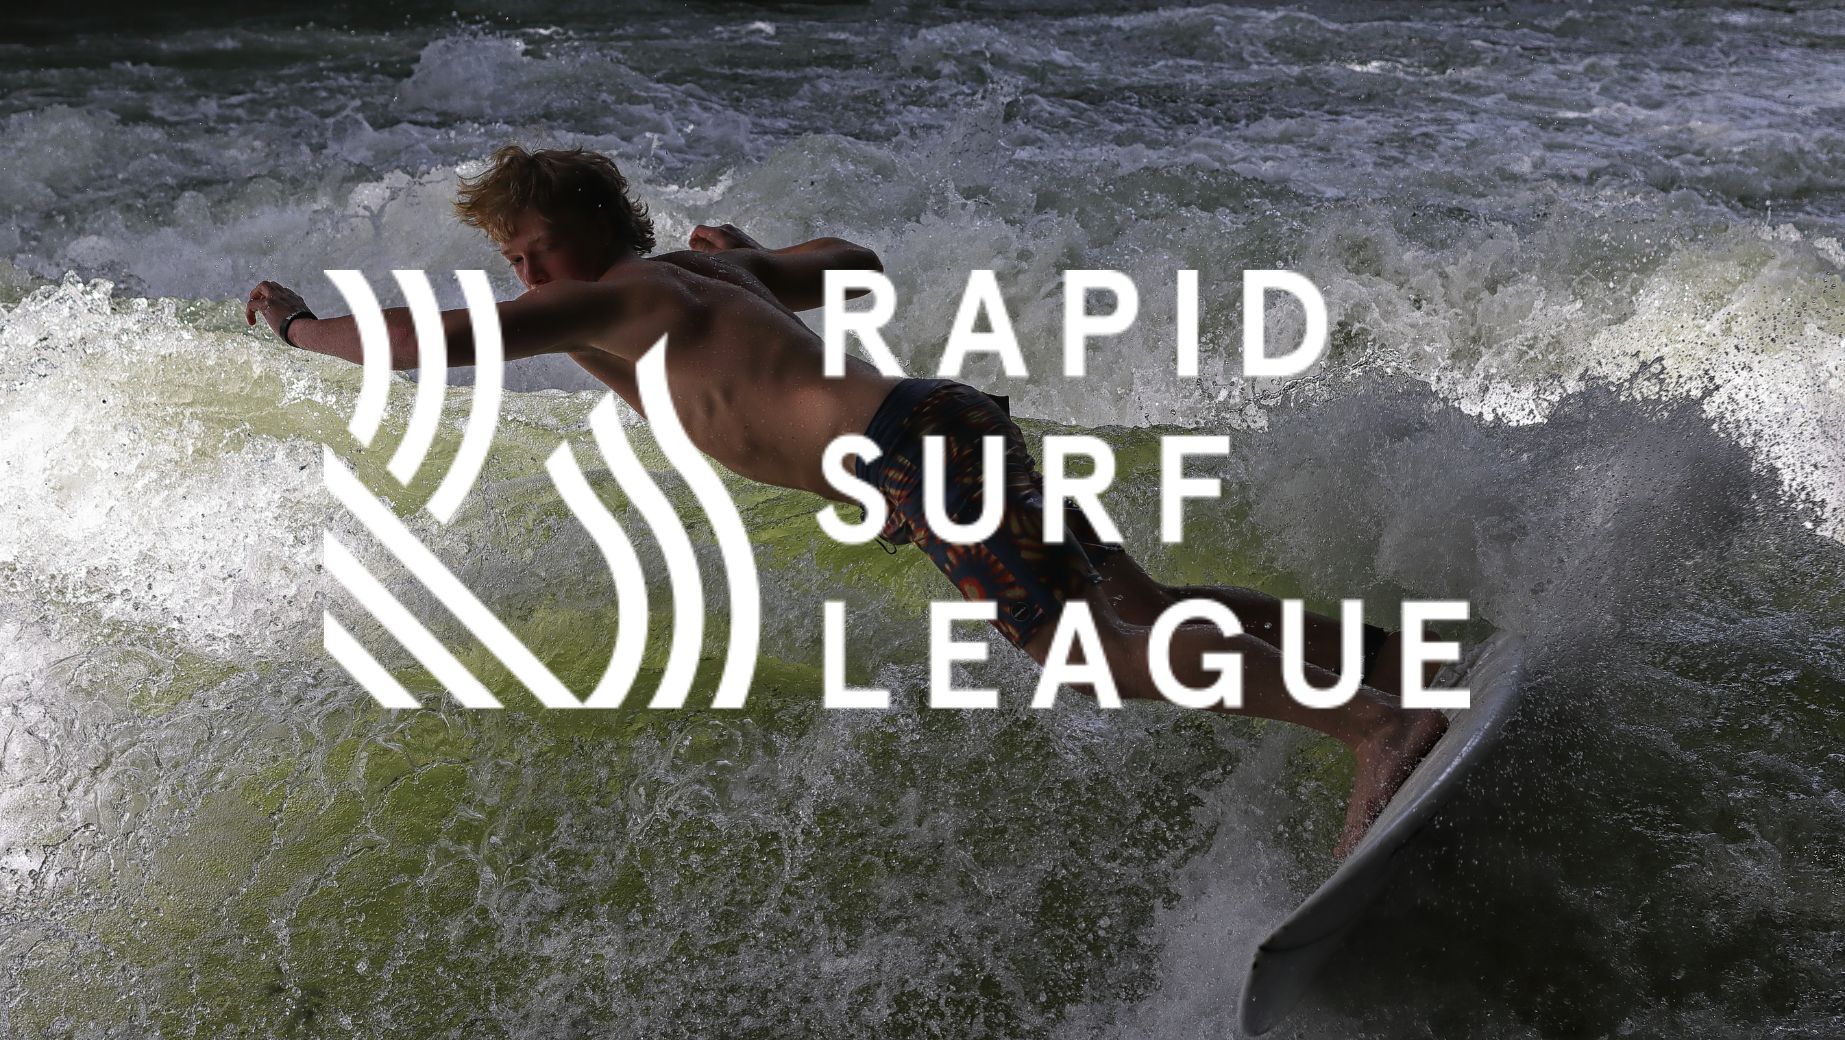 Rapid Surf League | REBEL SURF CO.